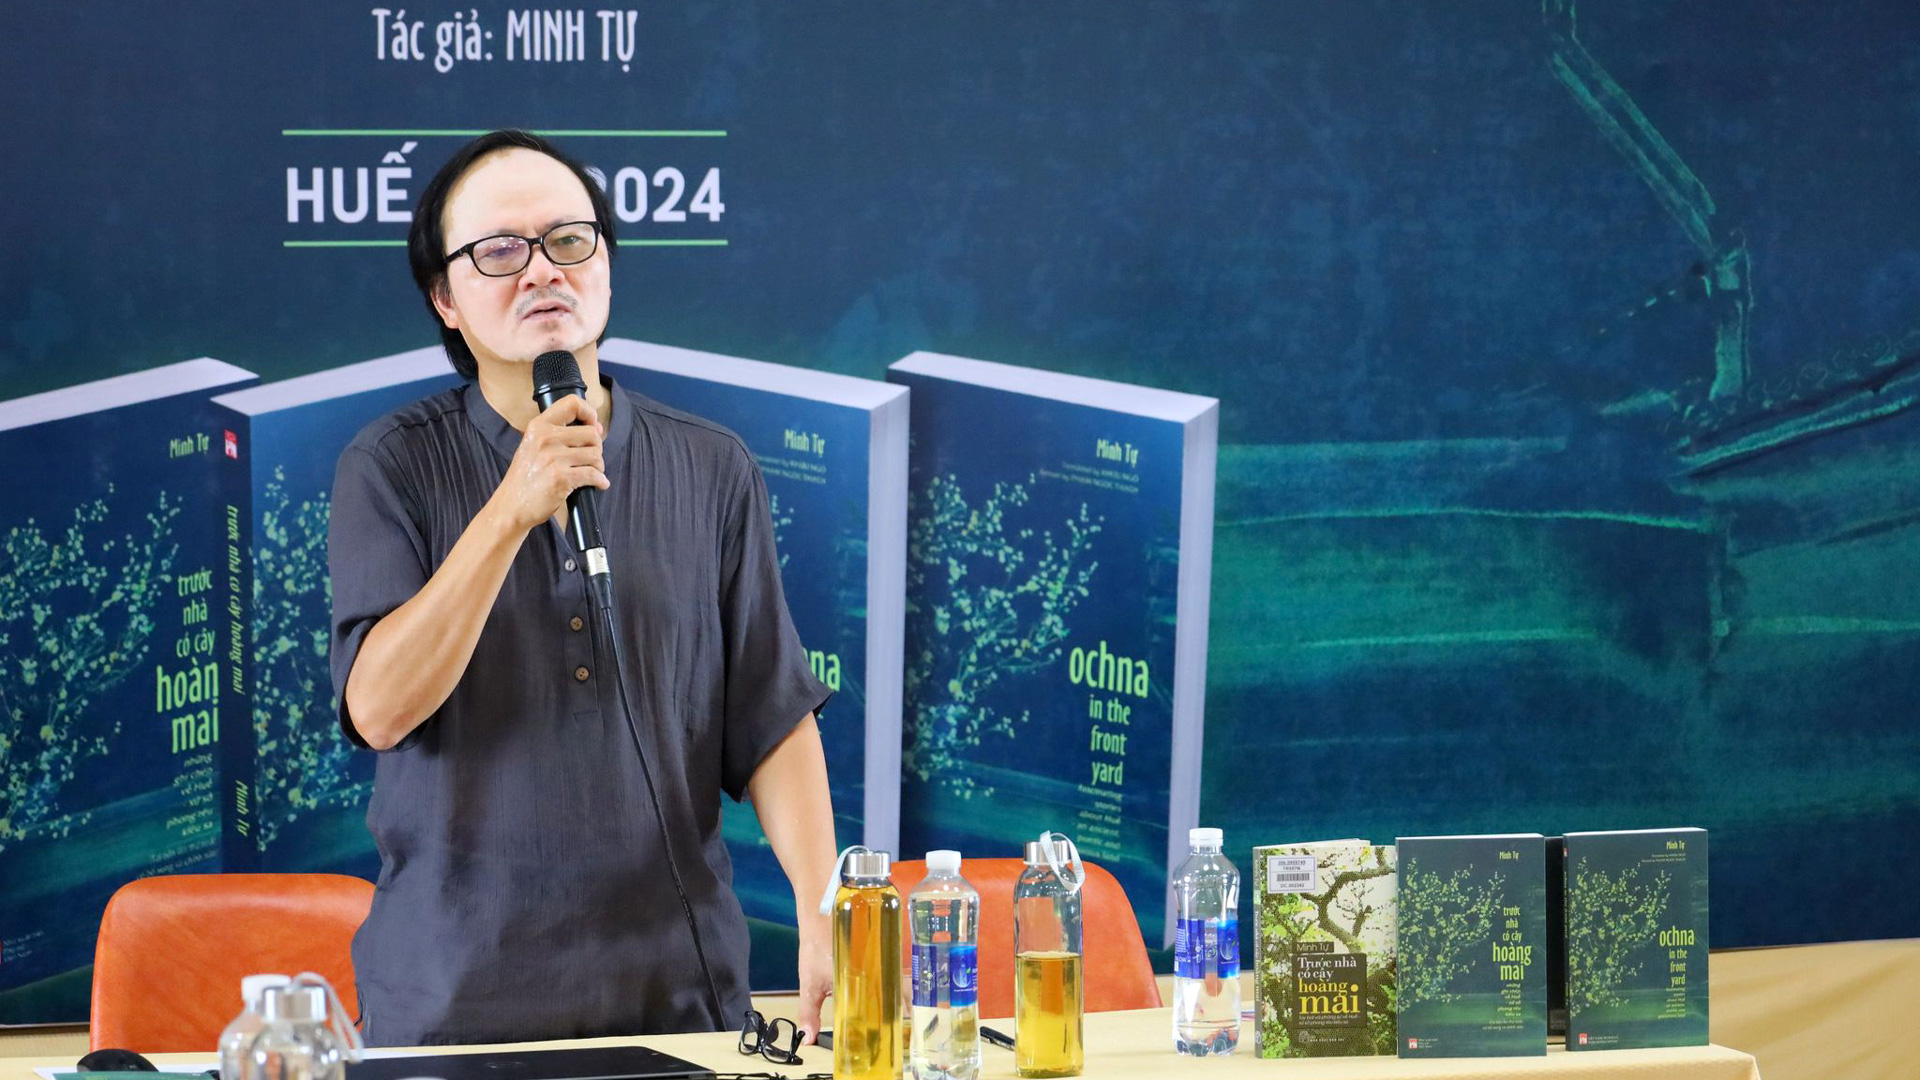 Nhà văn, nhà báo Minh Tự giới thiệu cuốn sách Trước nhà có cây hoàng mai tại Huế